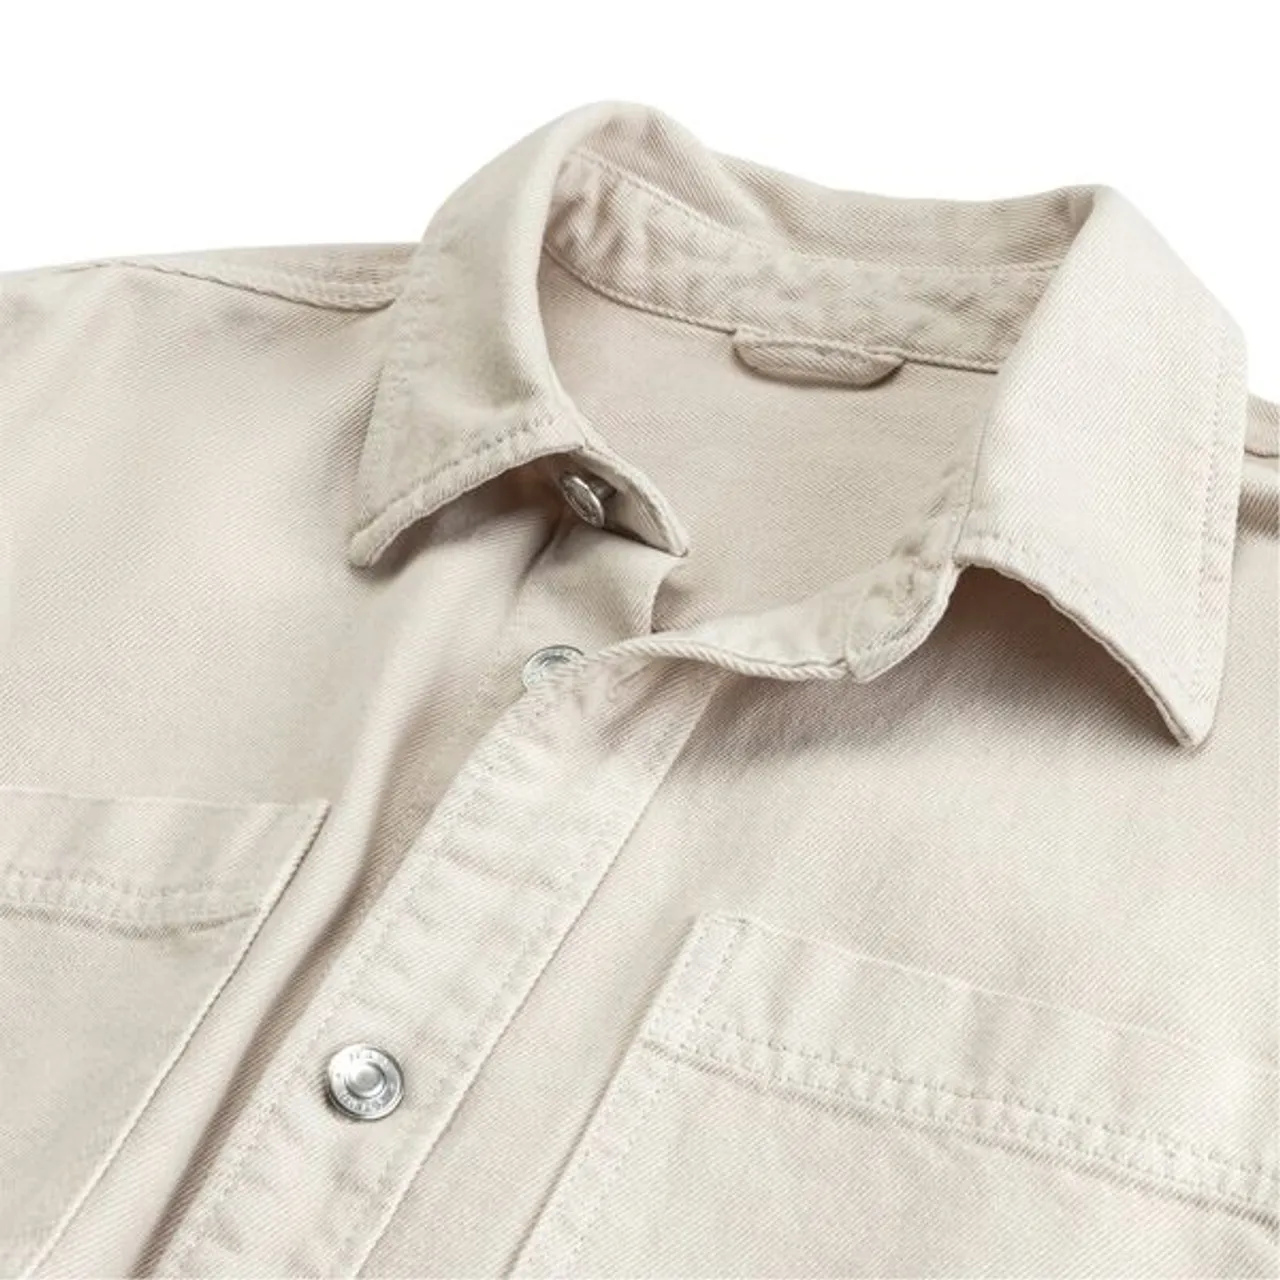 Hemdjacke JOHN DEVIN "Overshirt Regular Fit" Gr. L (52/54), weiß (offwhite) Herren Jacken Langarm Outdoorhemd mit aufgesetzten Taschen aus Baumwolle